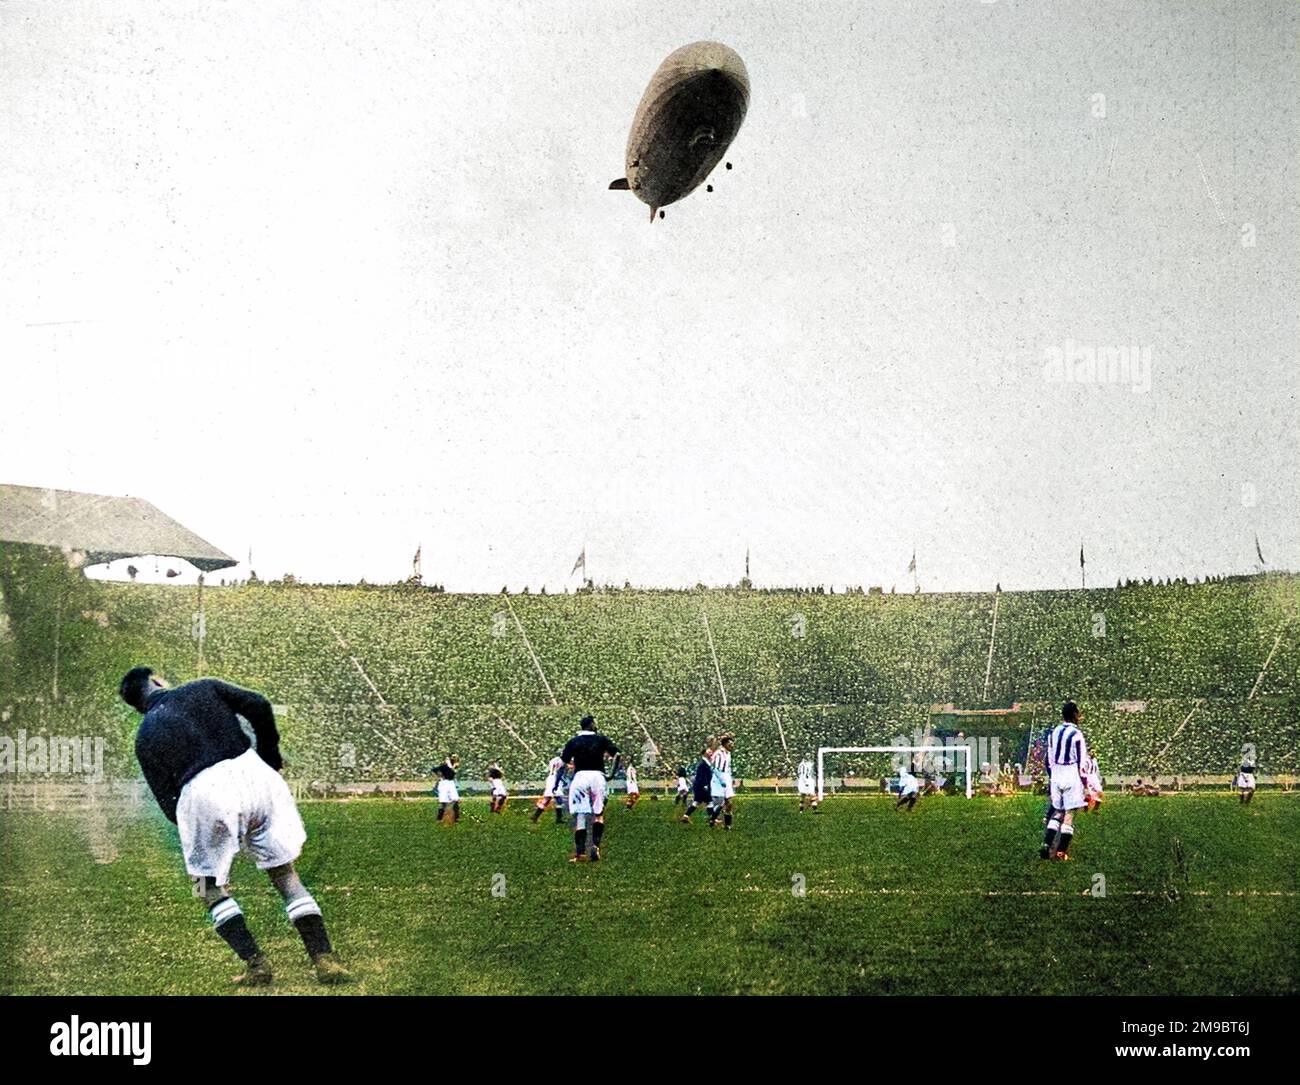 Stadio di Wembley, durante la città di Huddersfield contro l'Arsenal F.A. Coppa finale del 1930, con il 'Graf Zeppelin' nel cielo sopra. Si è riferito che il velivolo tedesco "si è mantenuto molto basso a terra, sconcertando giocatori e spettatori con il ruggito assordante dei suoi motori”. Arsenal ha vinto la partita 2-0. Foto Stock